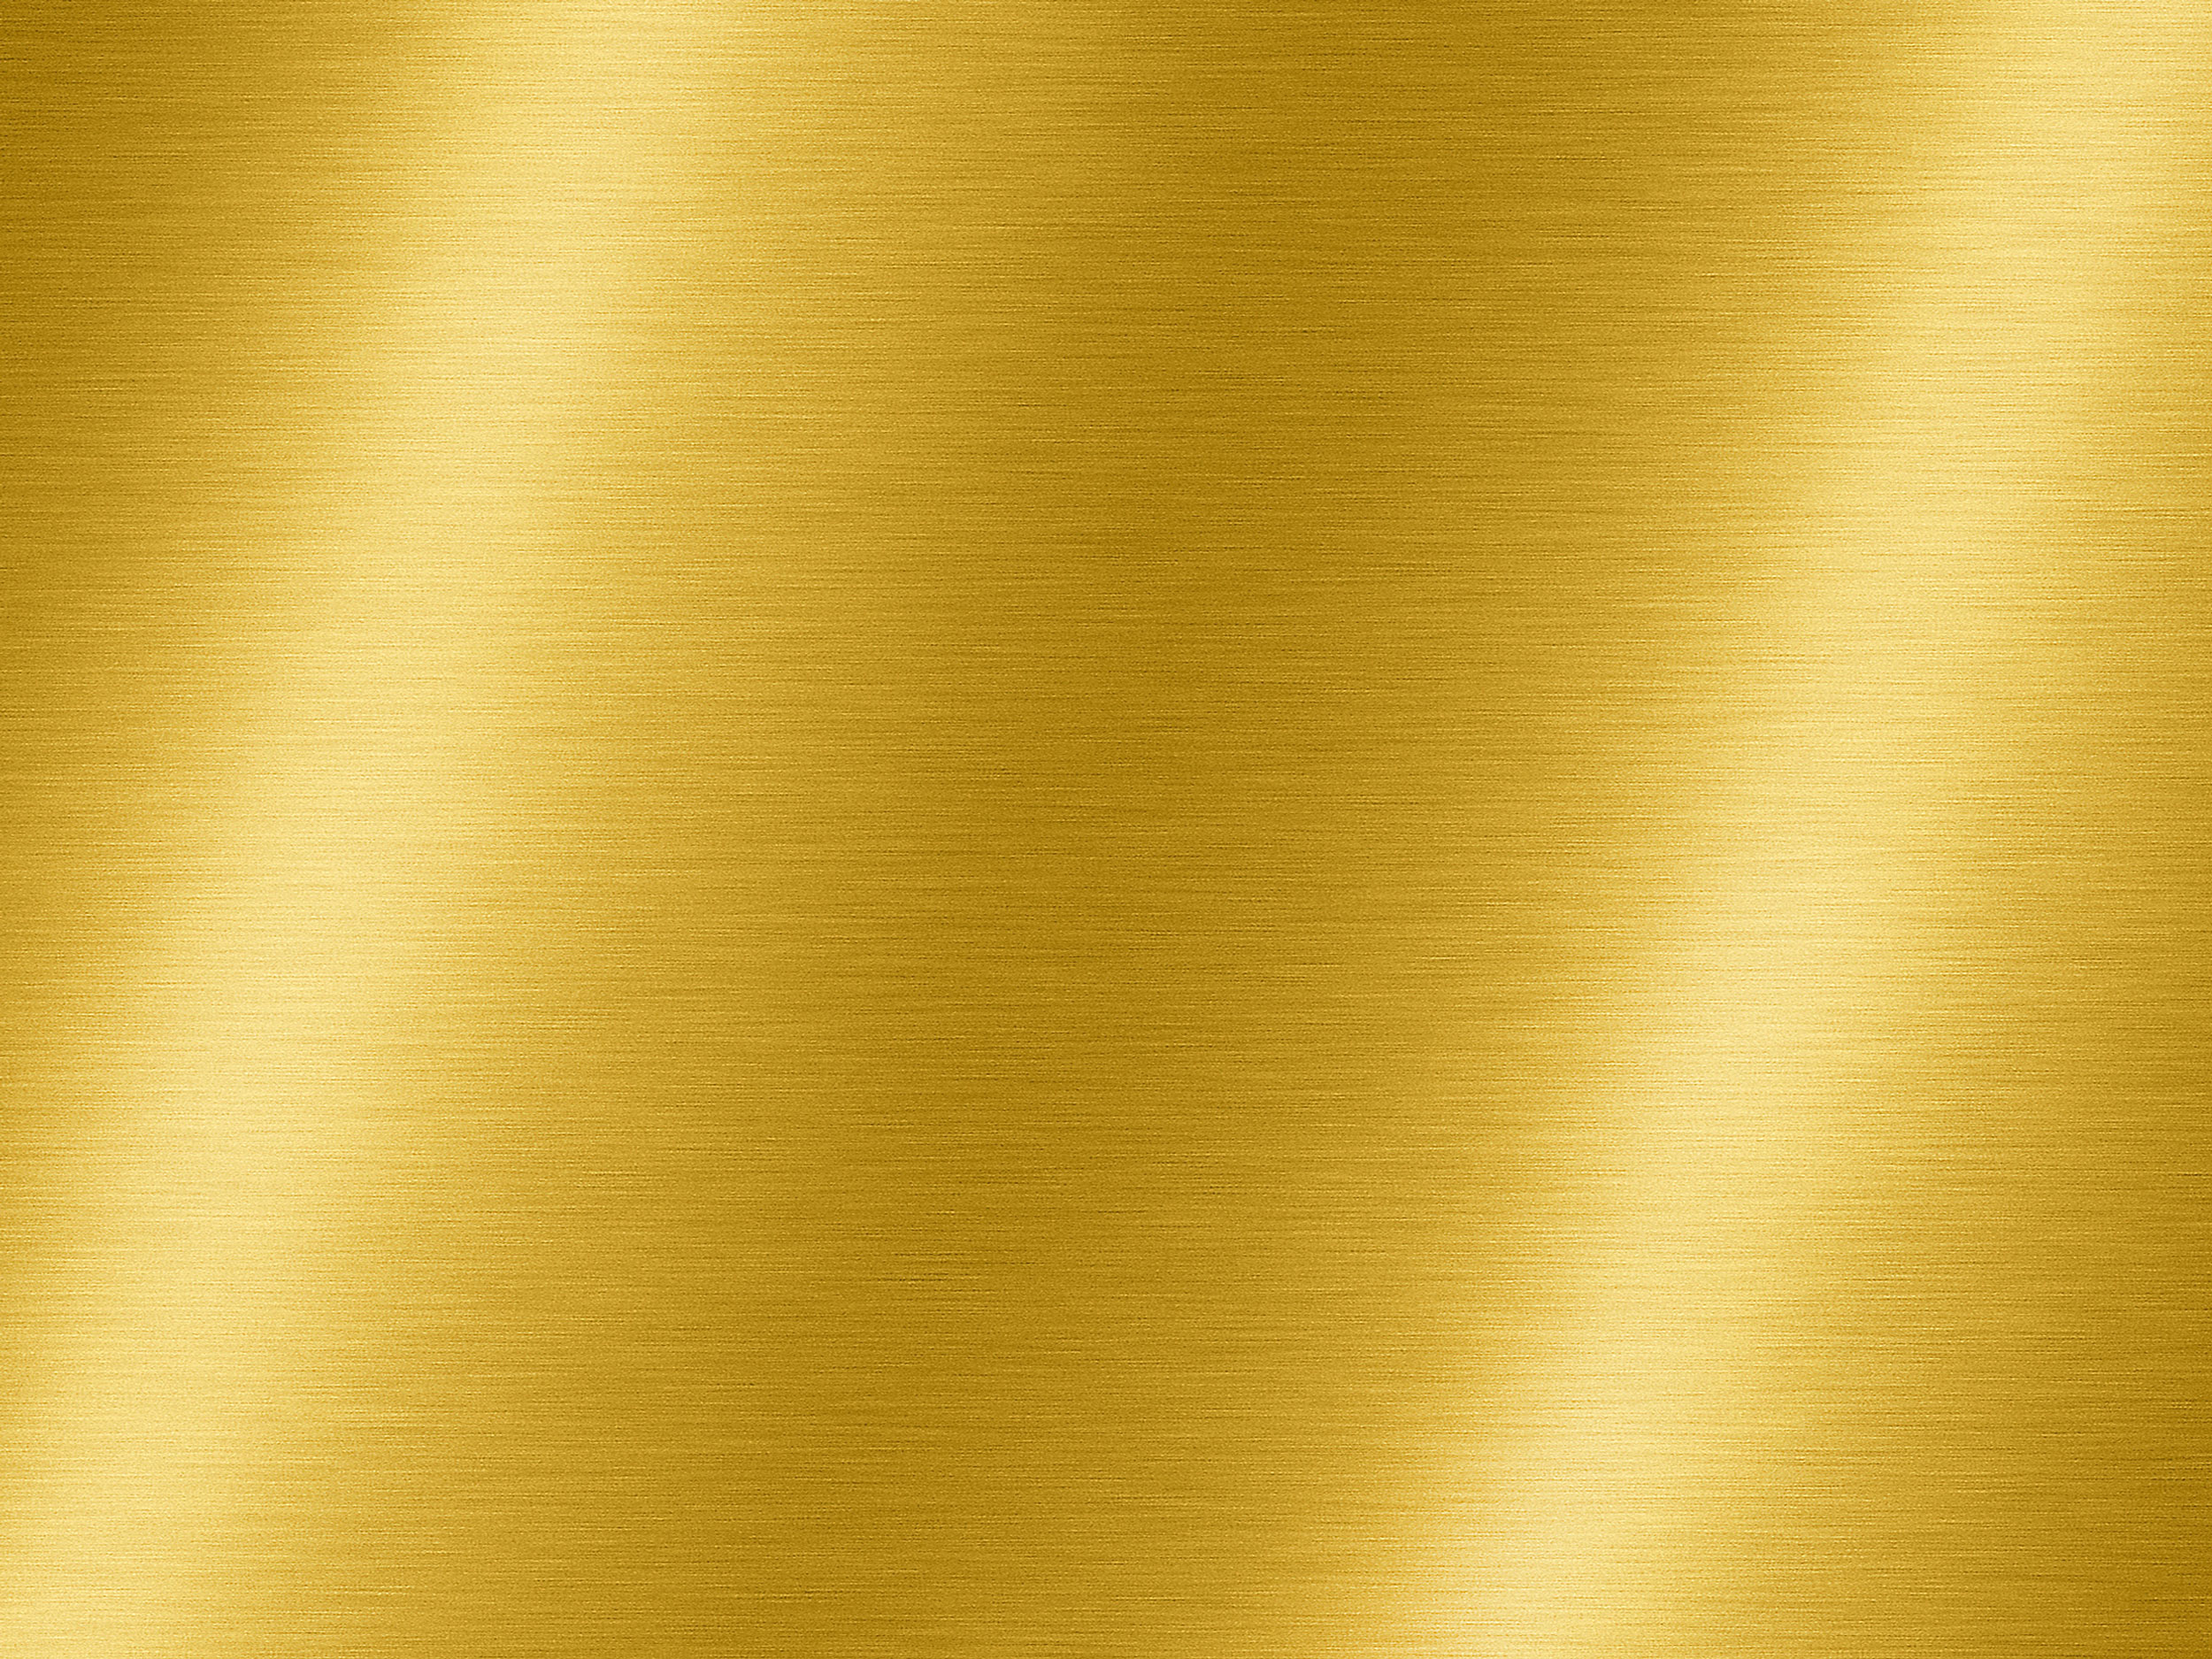 Текстура золота жёлтого цвета со светлыми переливами.